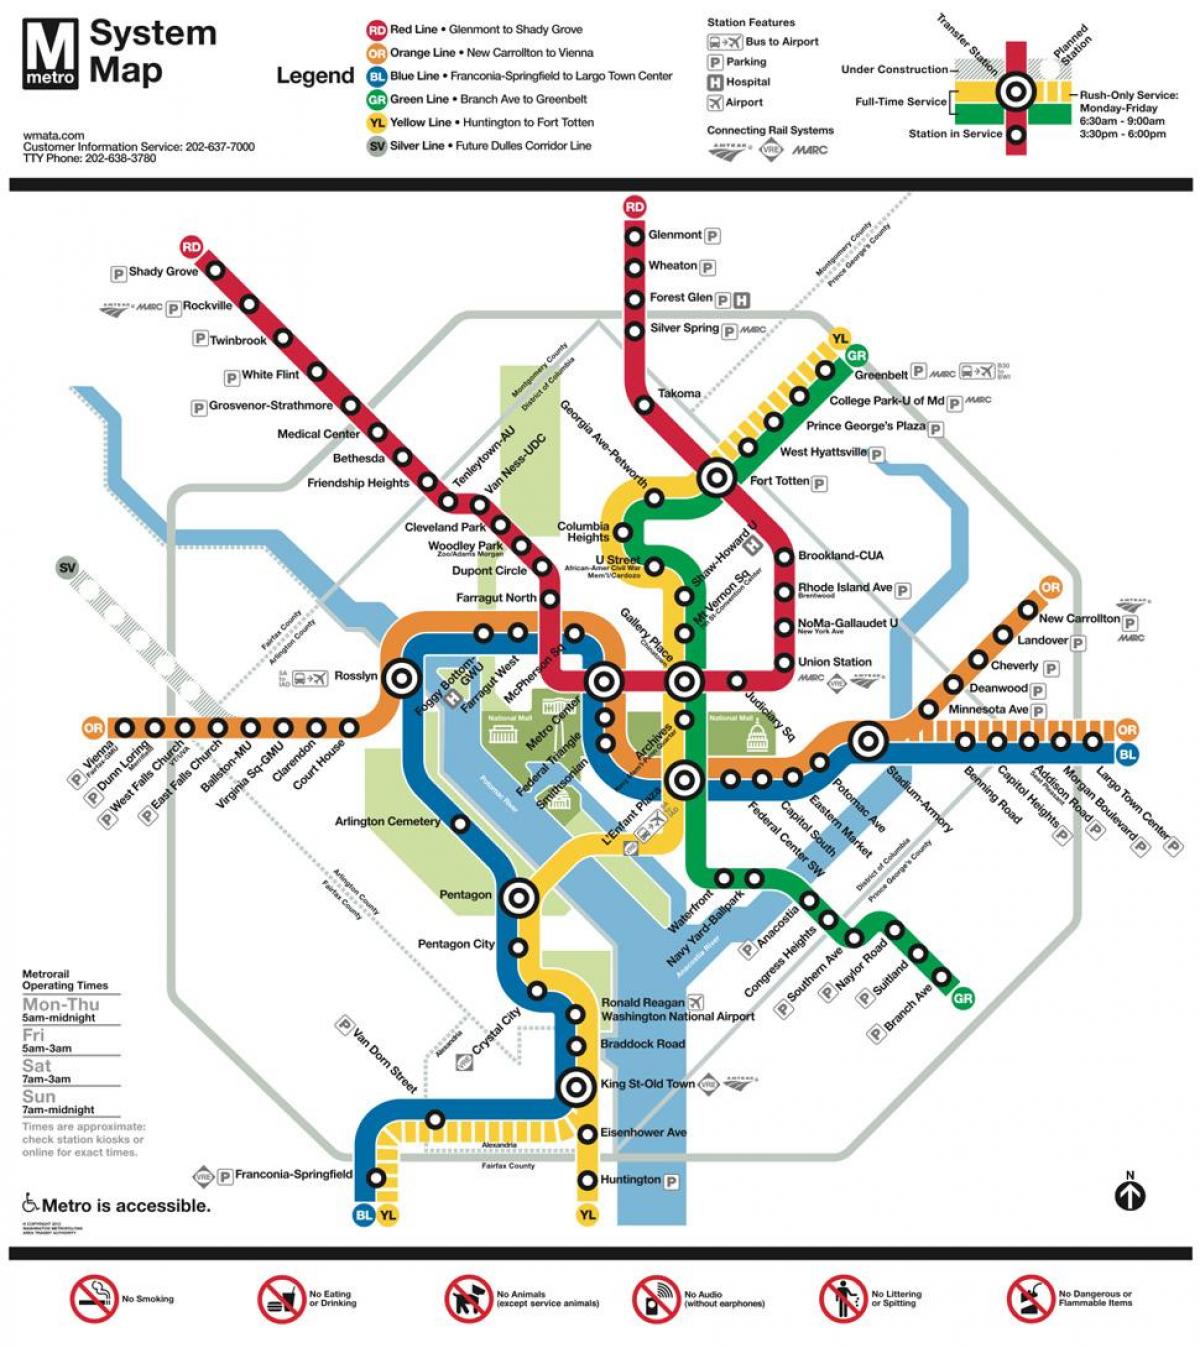 dca mappa della metropolitana